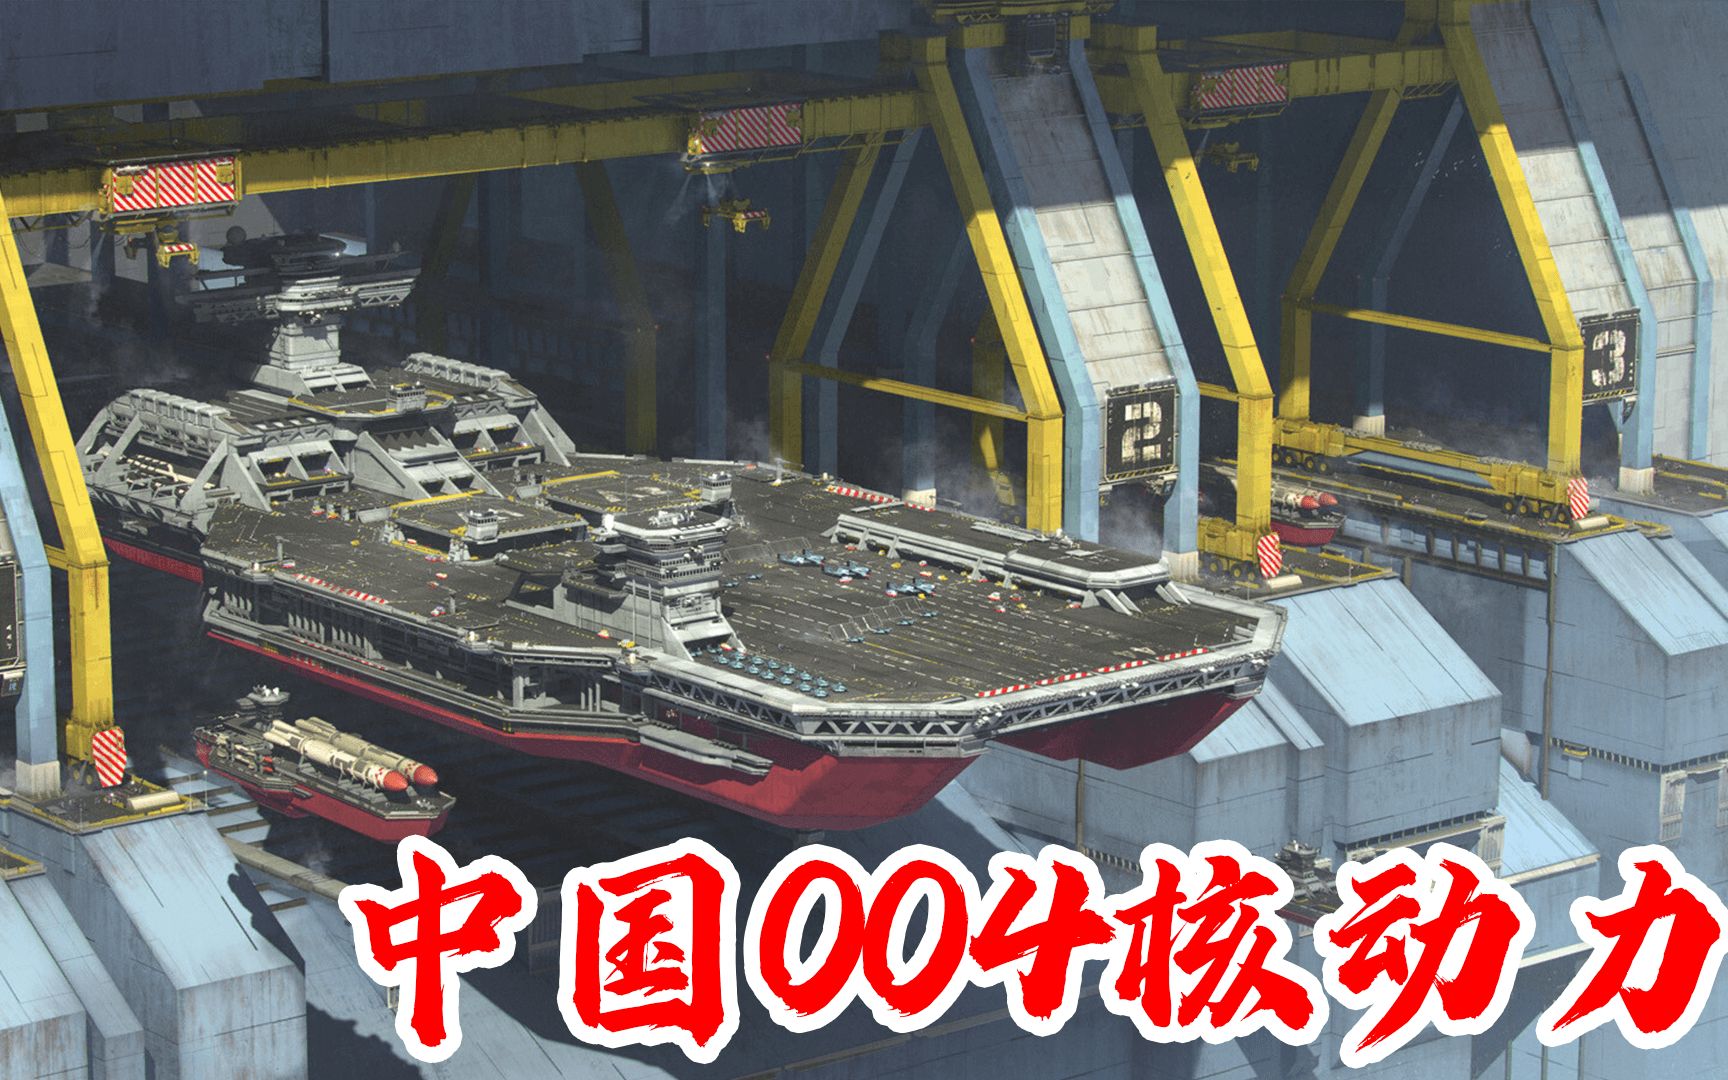 美军高级专家直言:中国004航母有序开建中,五代机铁定上舰!